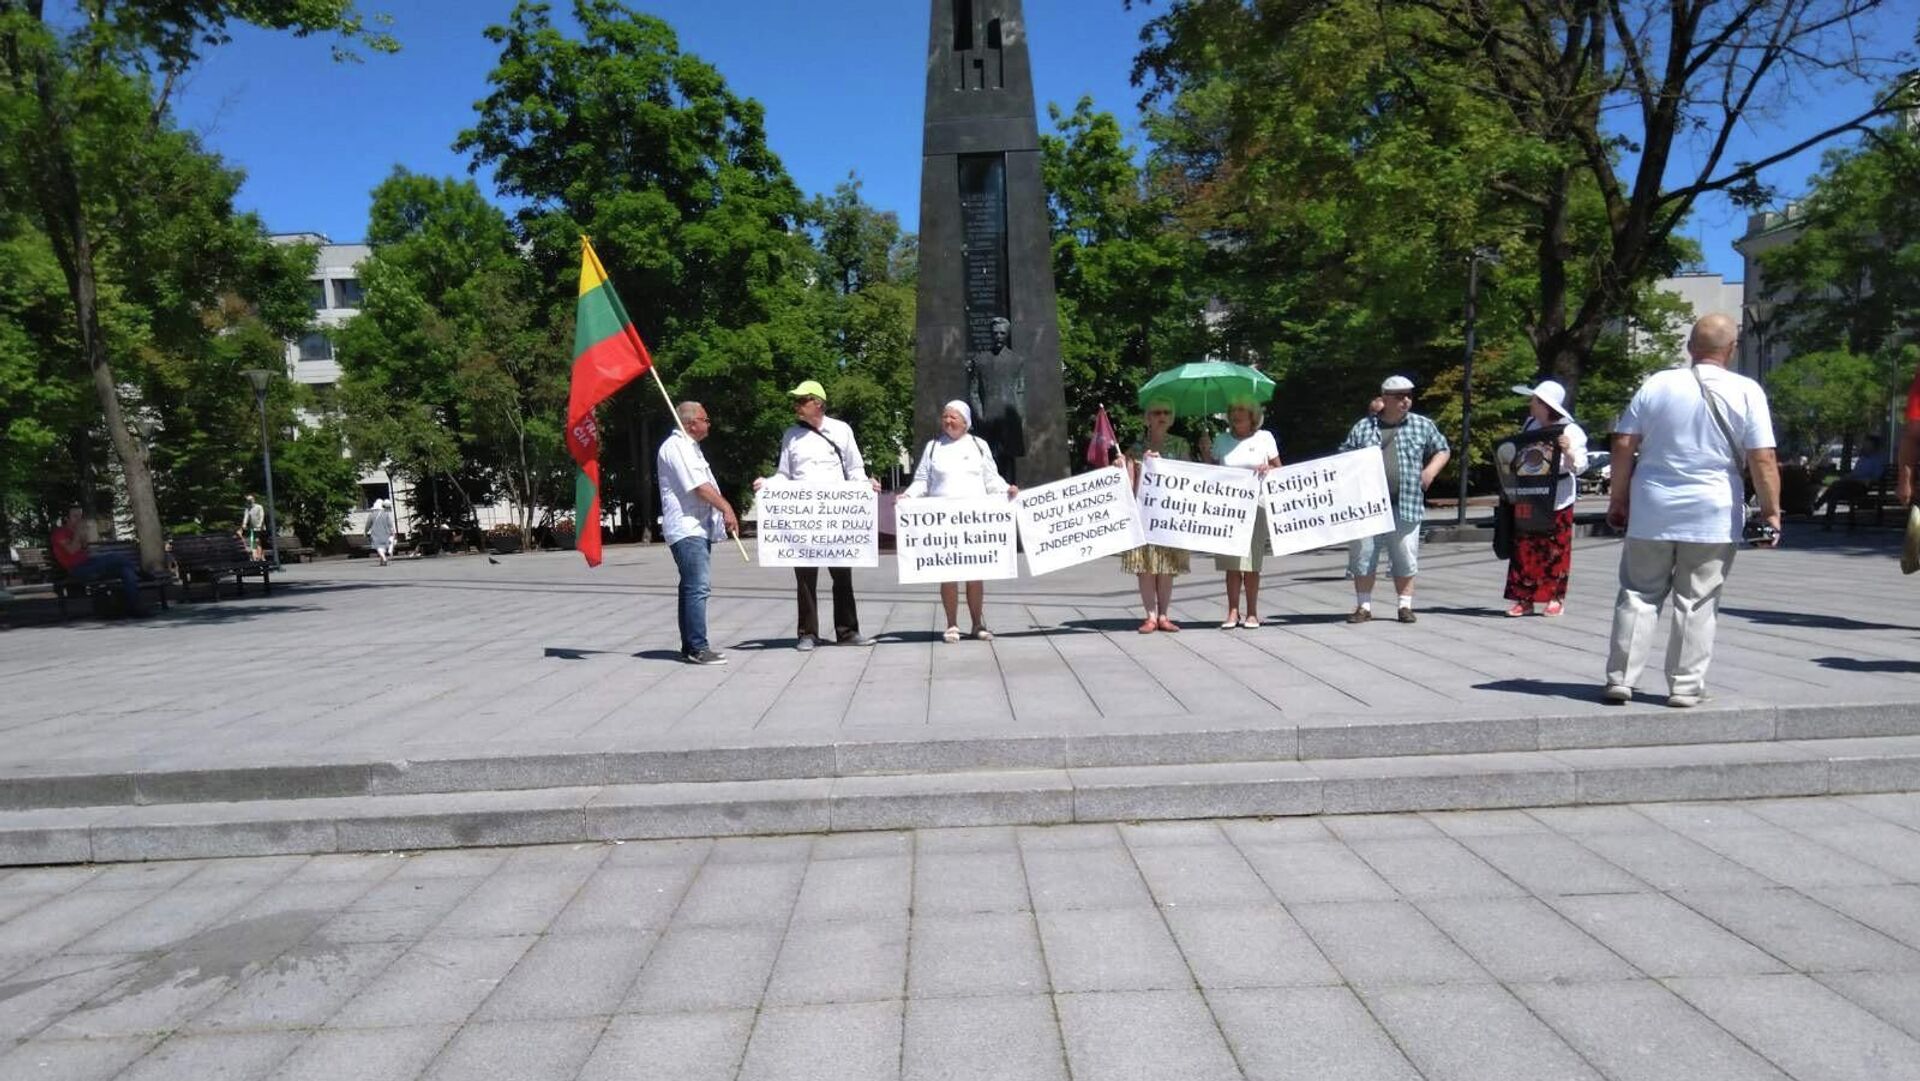 В Литве протестуют против роста цен на газ и электричество - Sputnik Литва, 1920, 17.06.2021